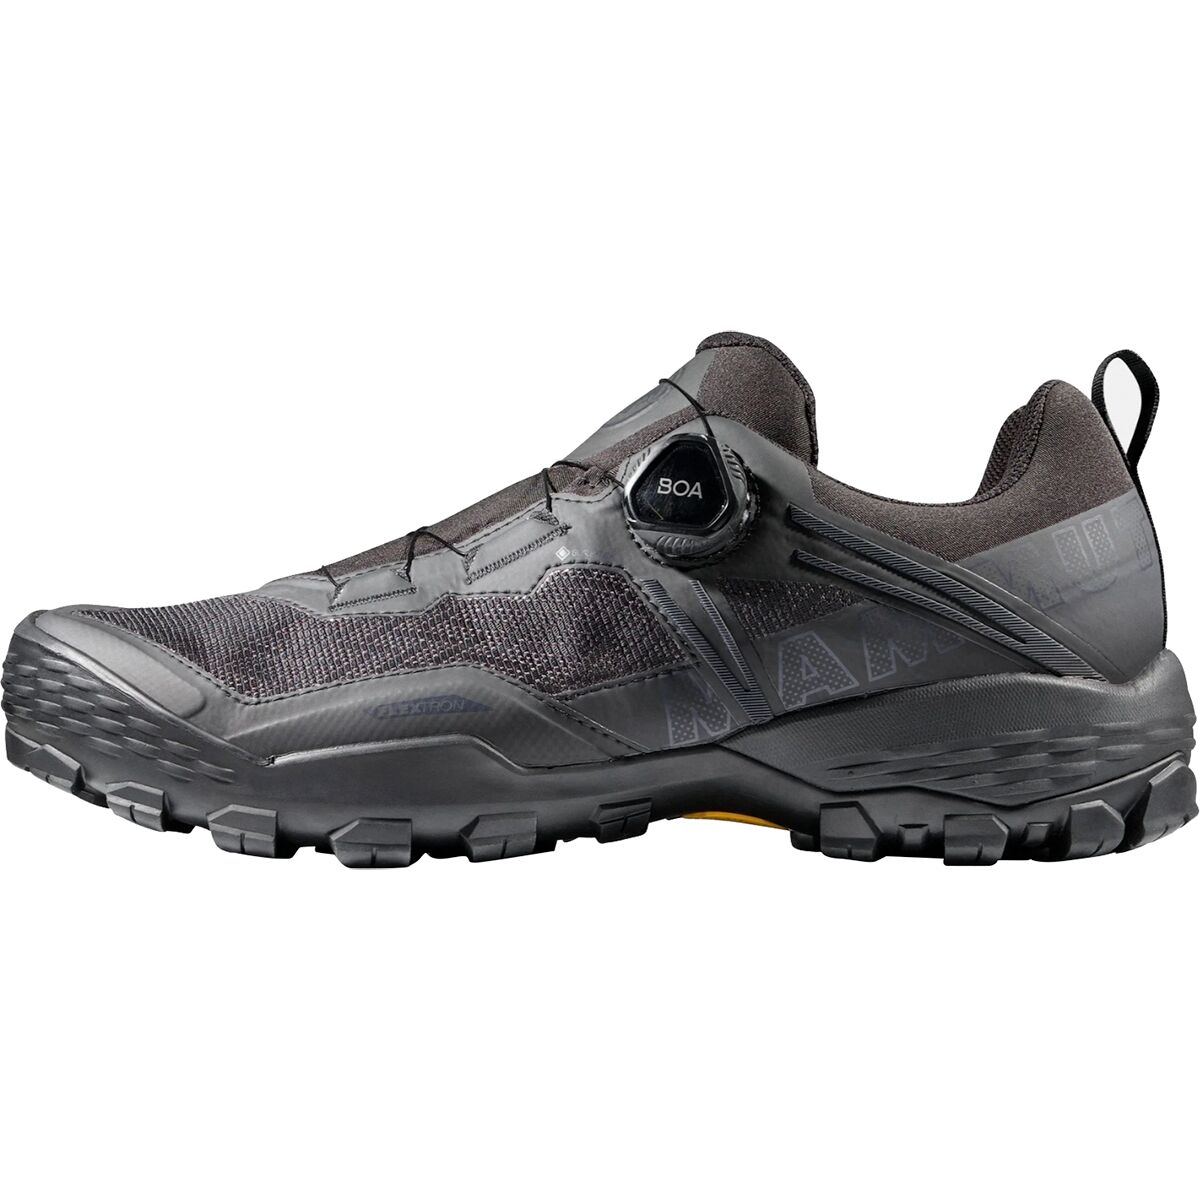 Mammut Ducan BOA Low GTX Hiking Shoe - Men's